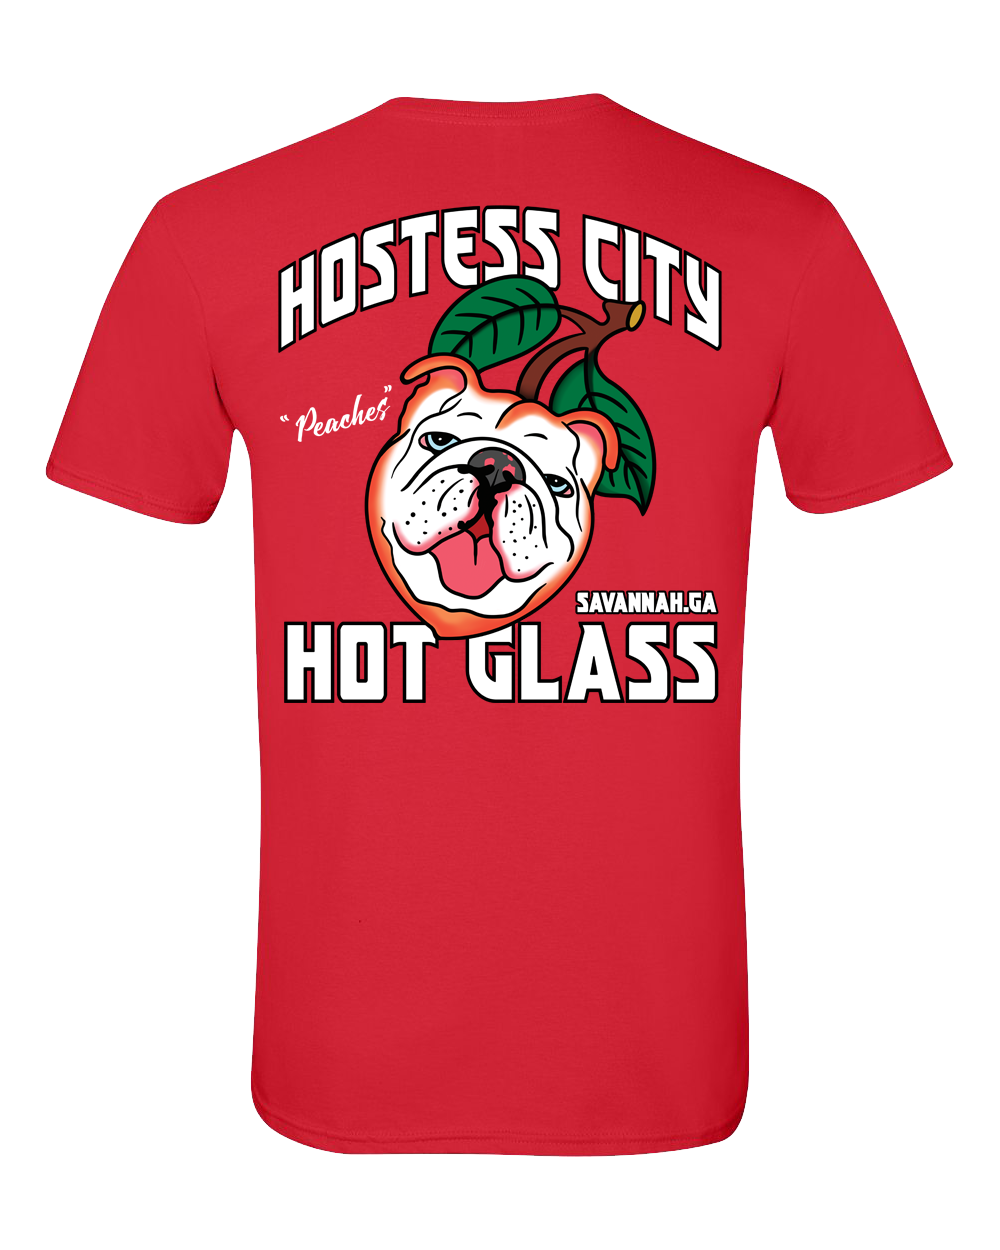 Hostess City Hot Glass “Peaches” unisex t-shirt